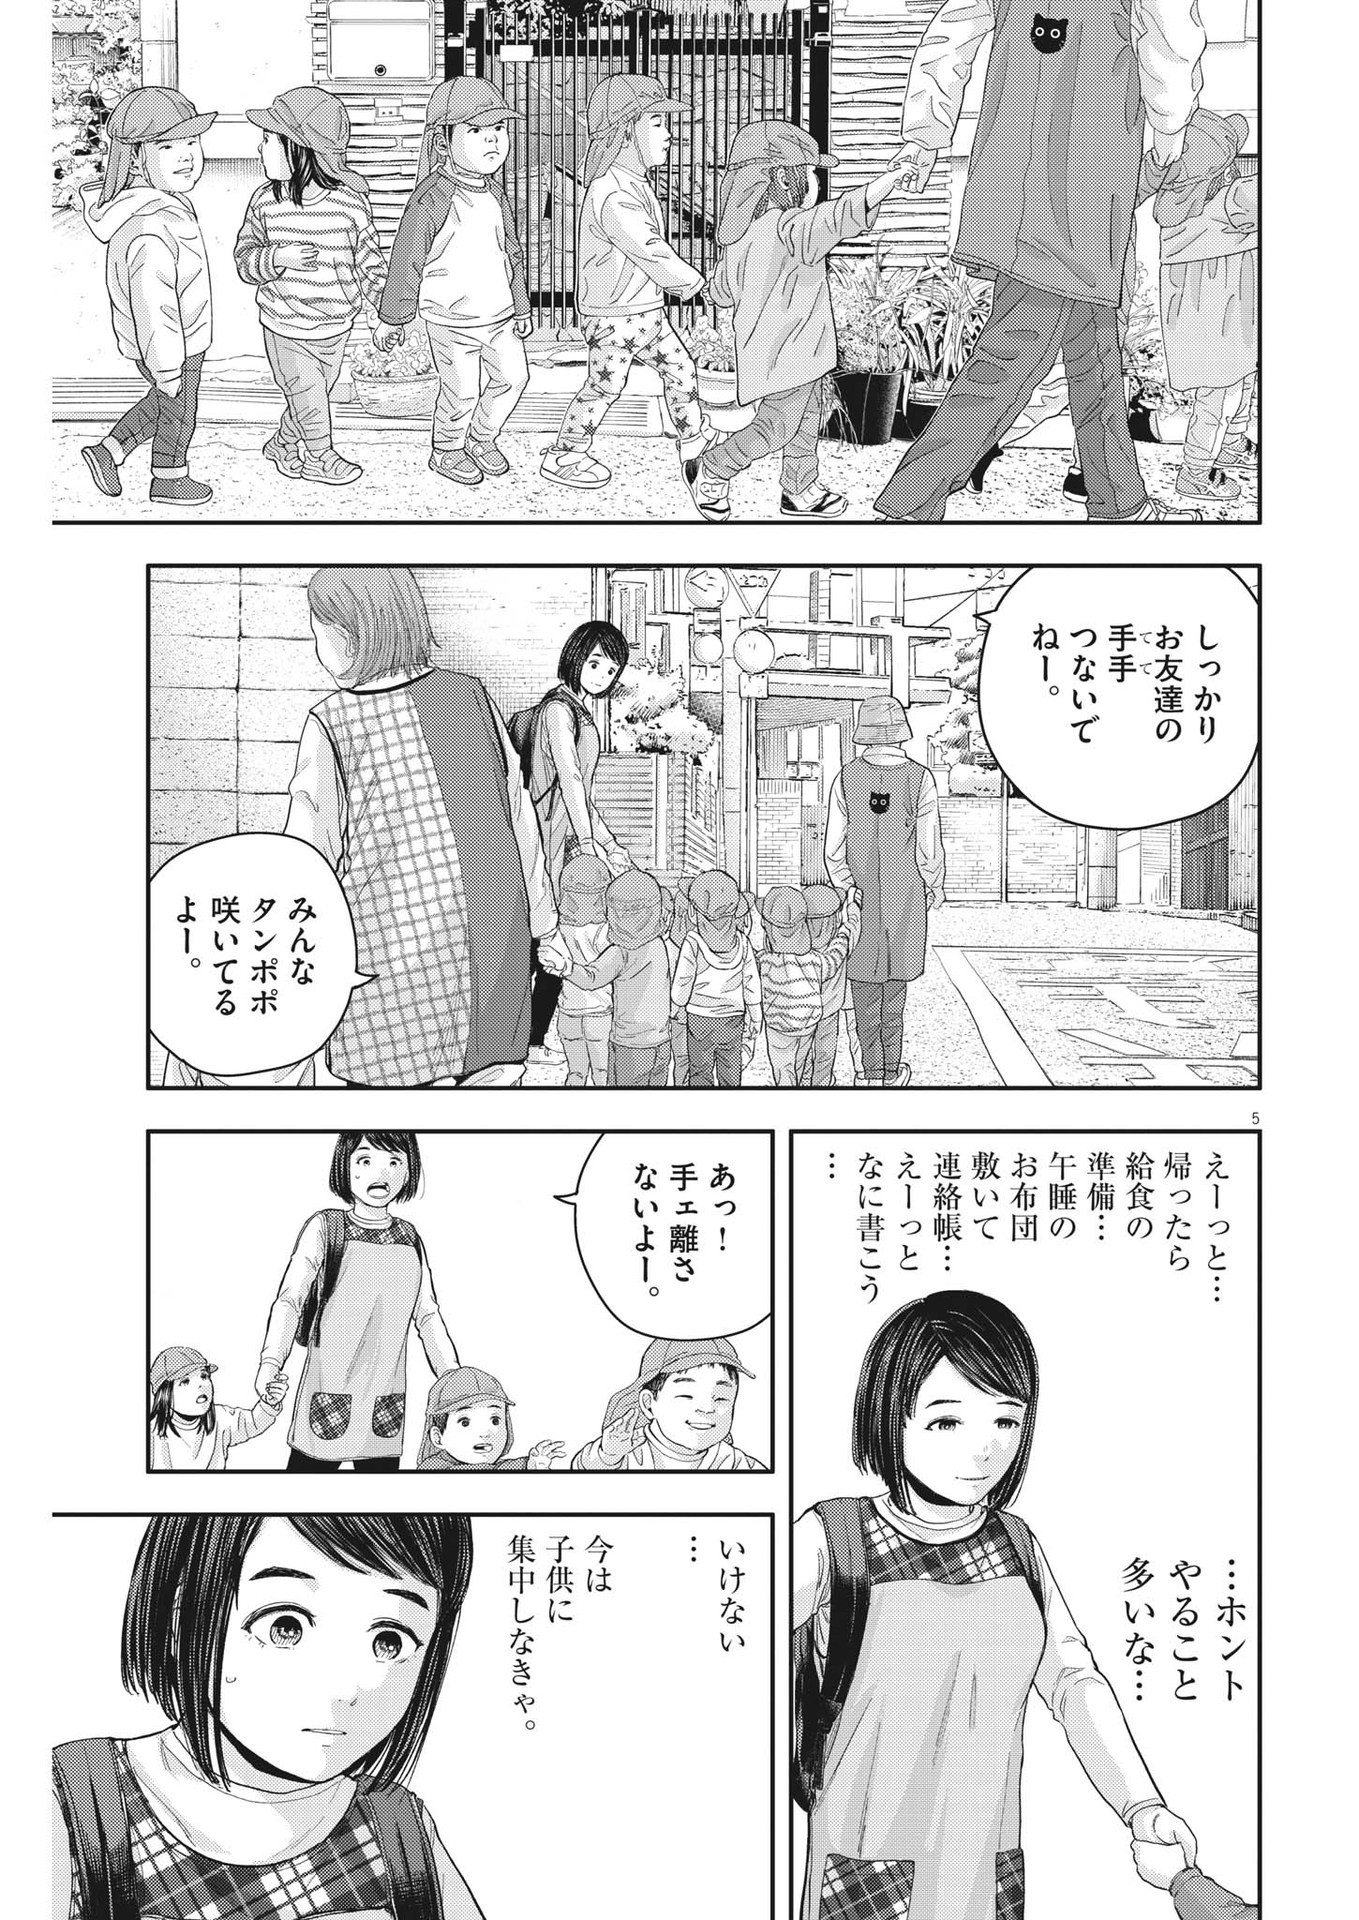 Yumenashi-sensei no Shinroshidou - Chapter 22 - Page 5